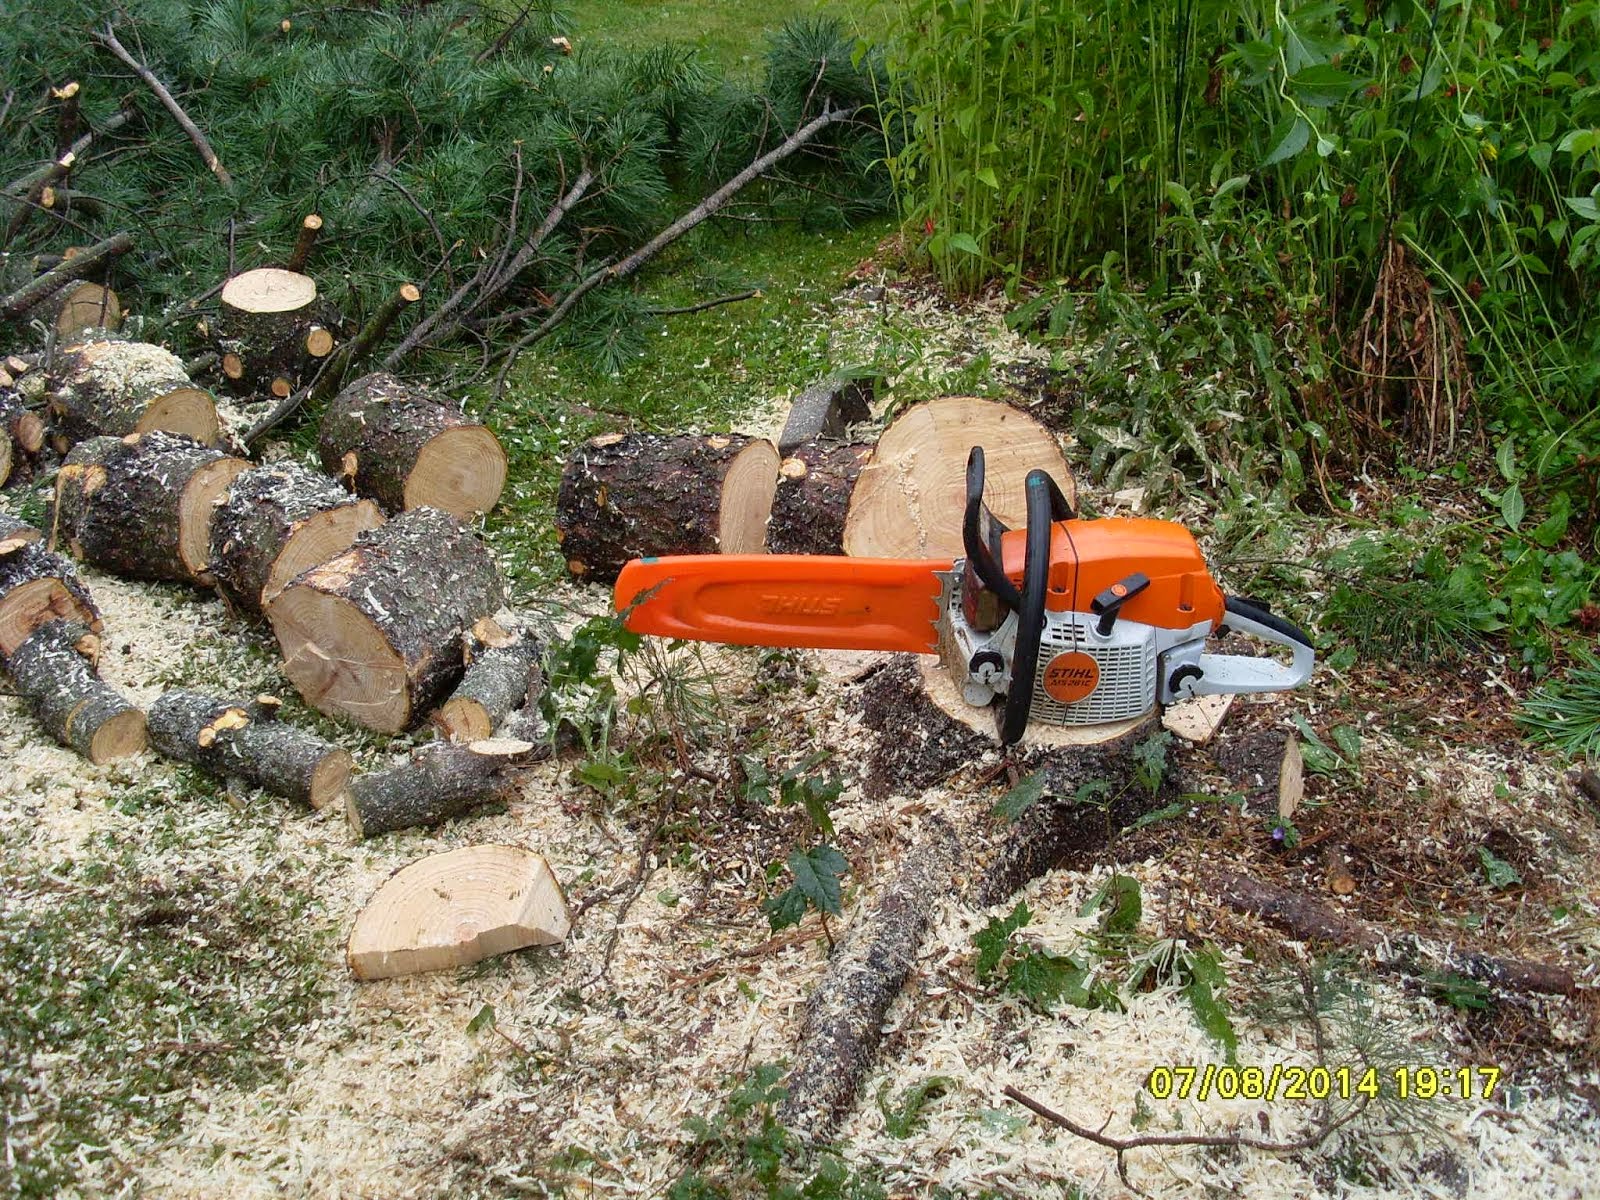 Järeämmätkin pihapuut kaatuvat Stihlillä. Puunkaatotiedustelut e-mail: talonmiespalvelu@gmail.com